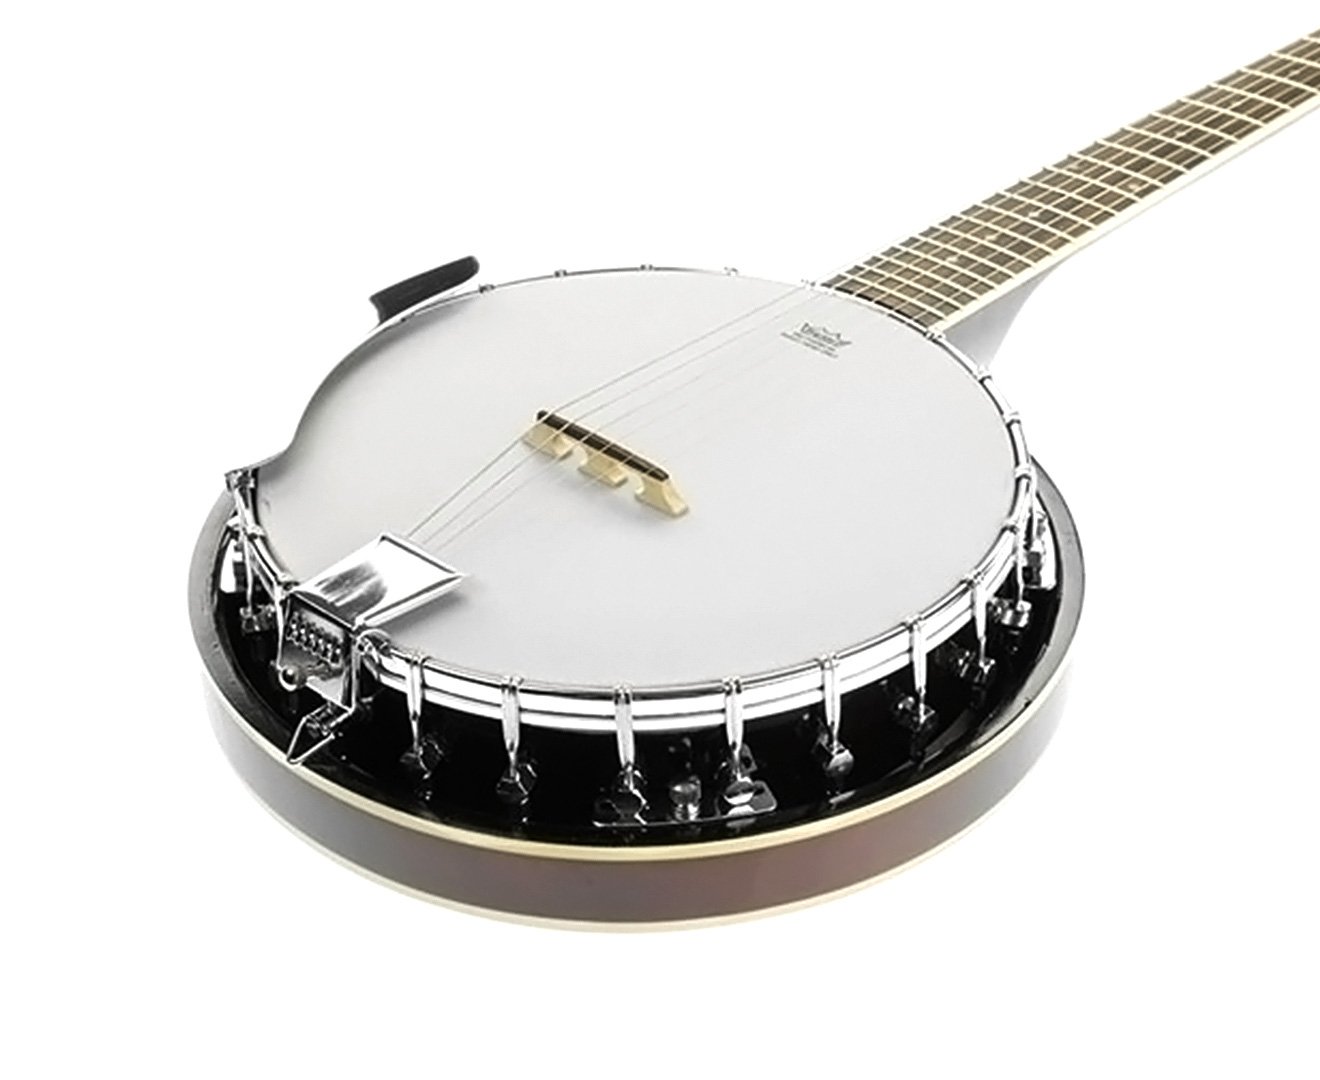 Karrera 6 String Resonator Banjo - Brown 1